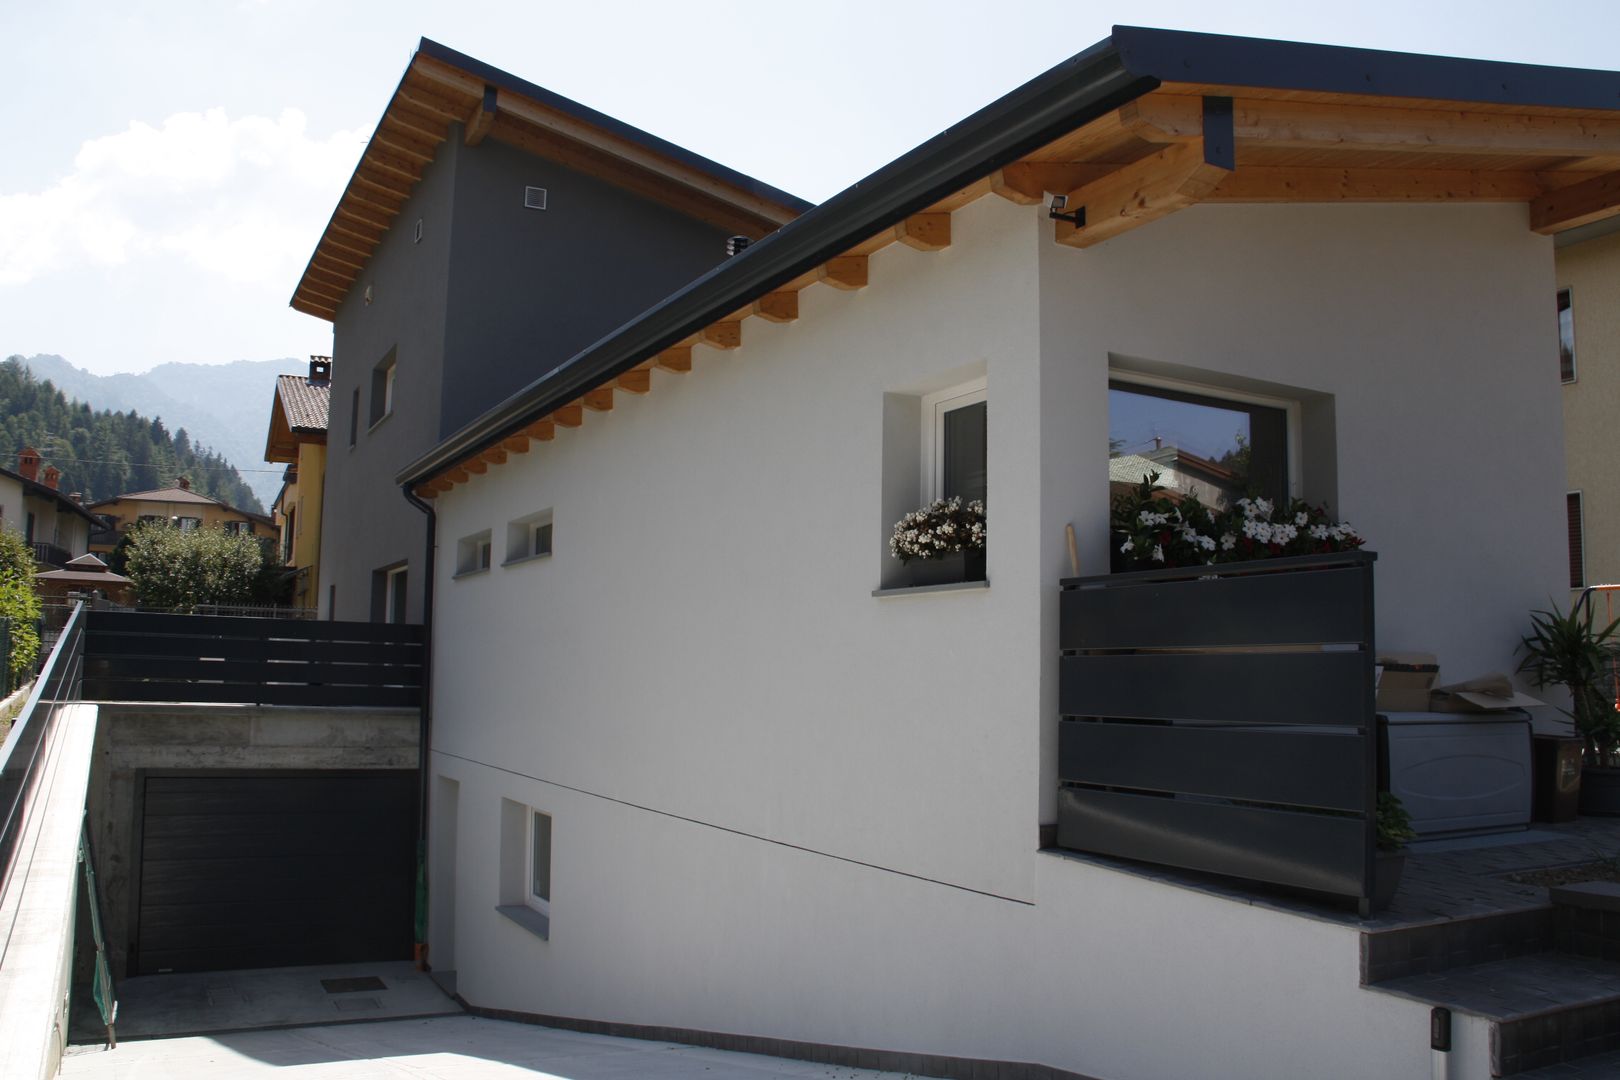 Casa in legno - provincia di Bergamo, BENDOTTI ZAMBONI Tecnici Associati BENDOTTI ZAMBONI Tecnici Associati Maisons modernes